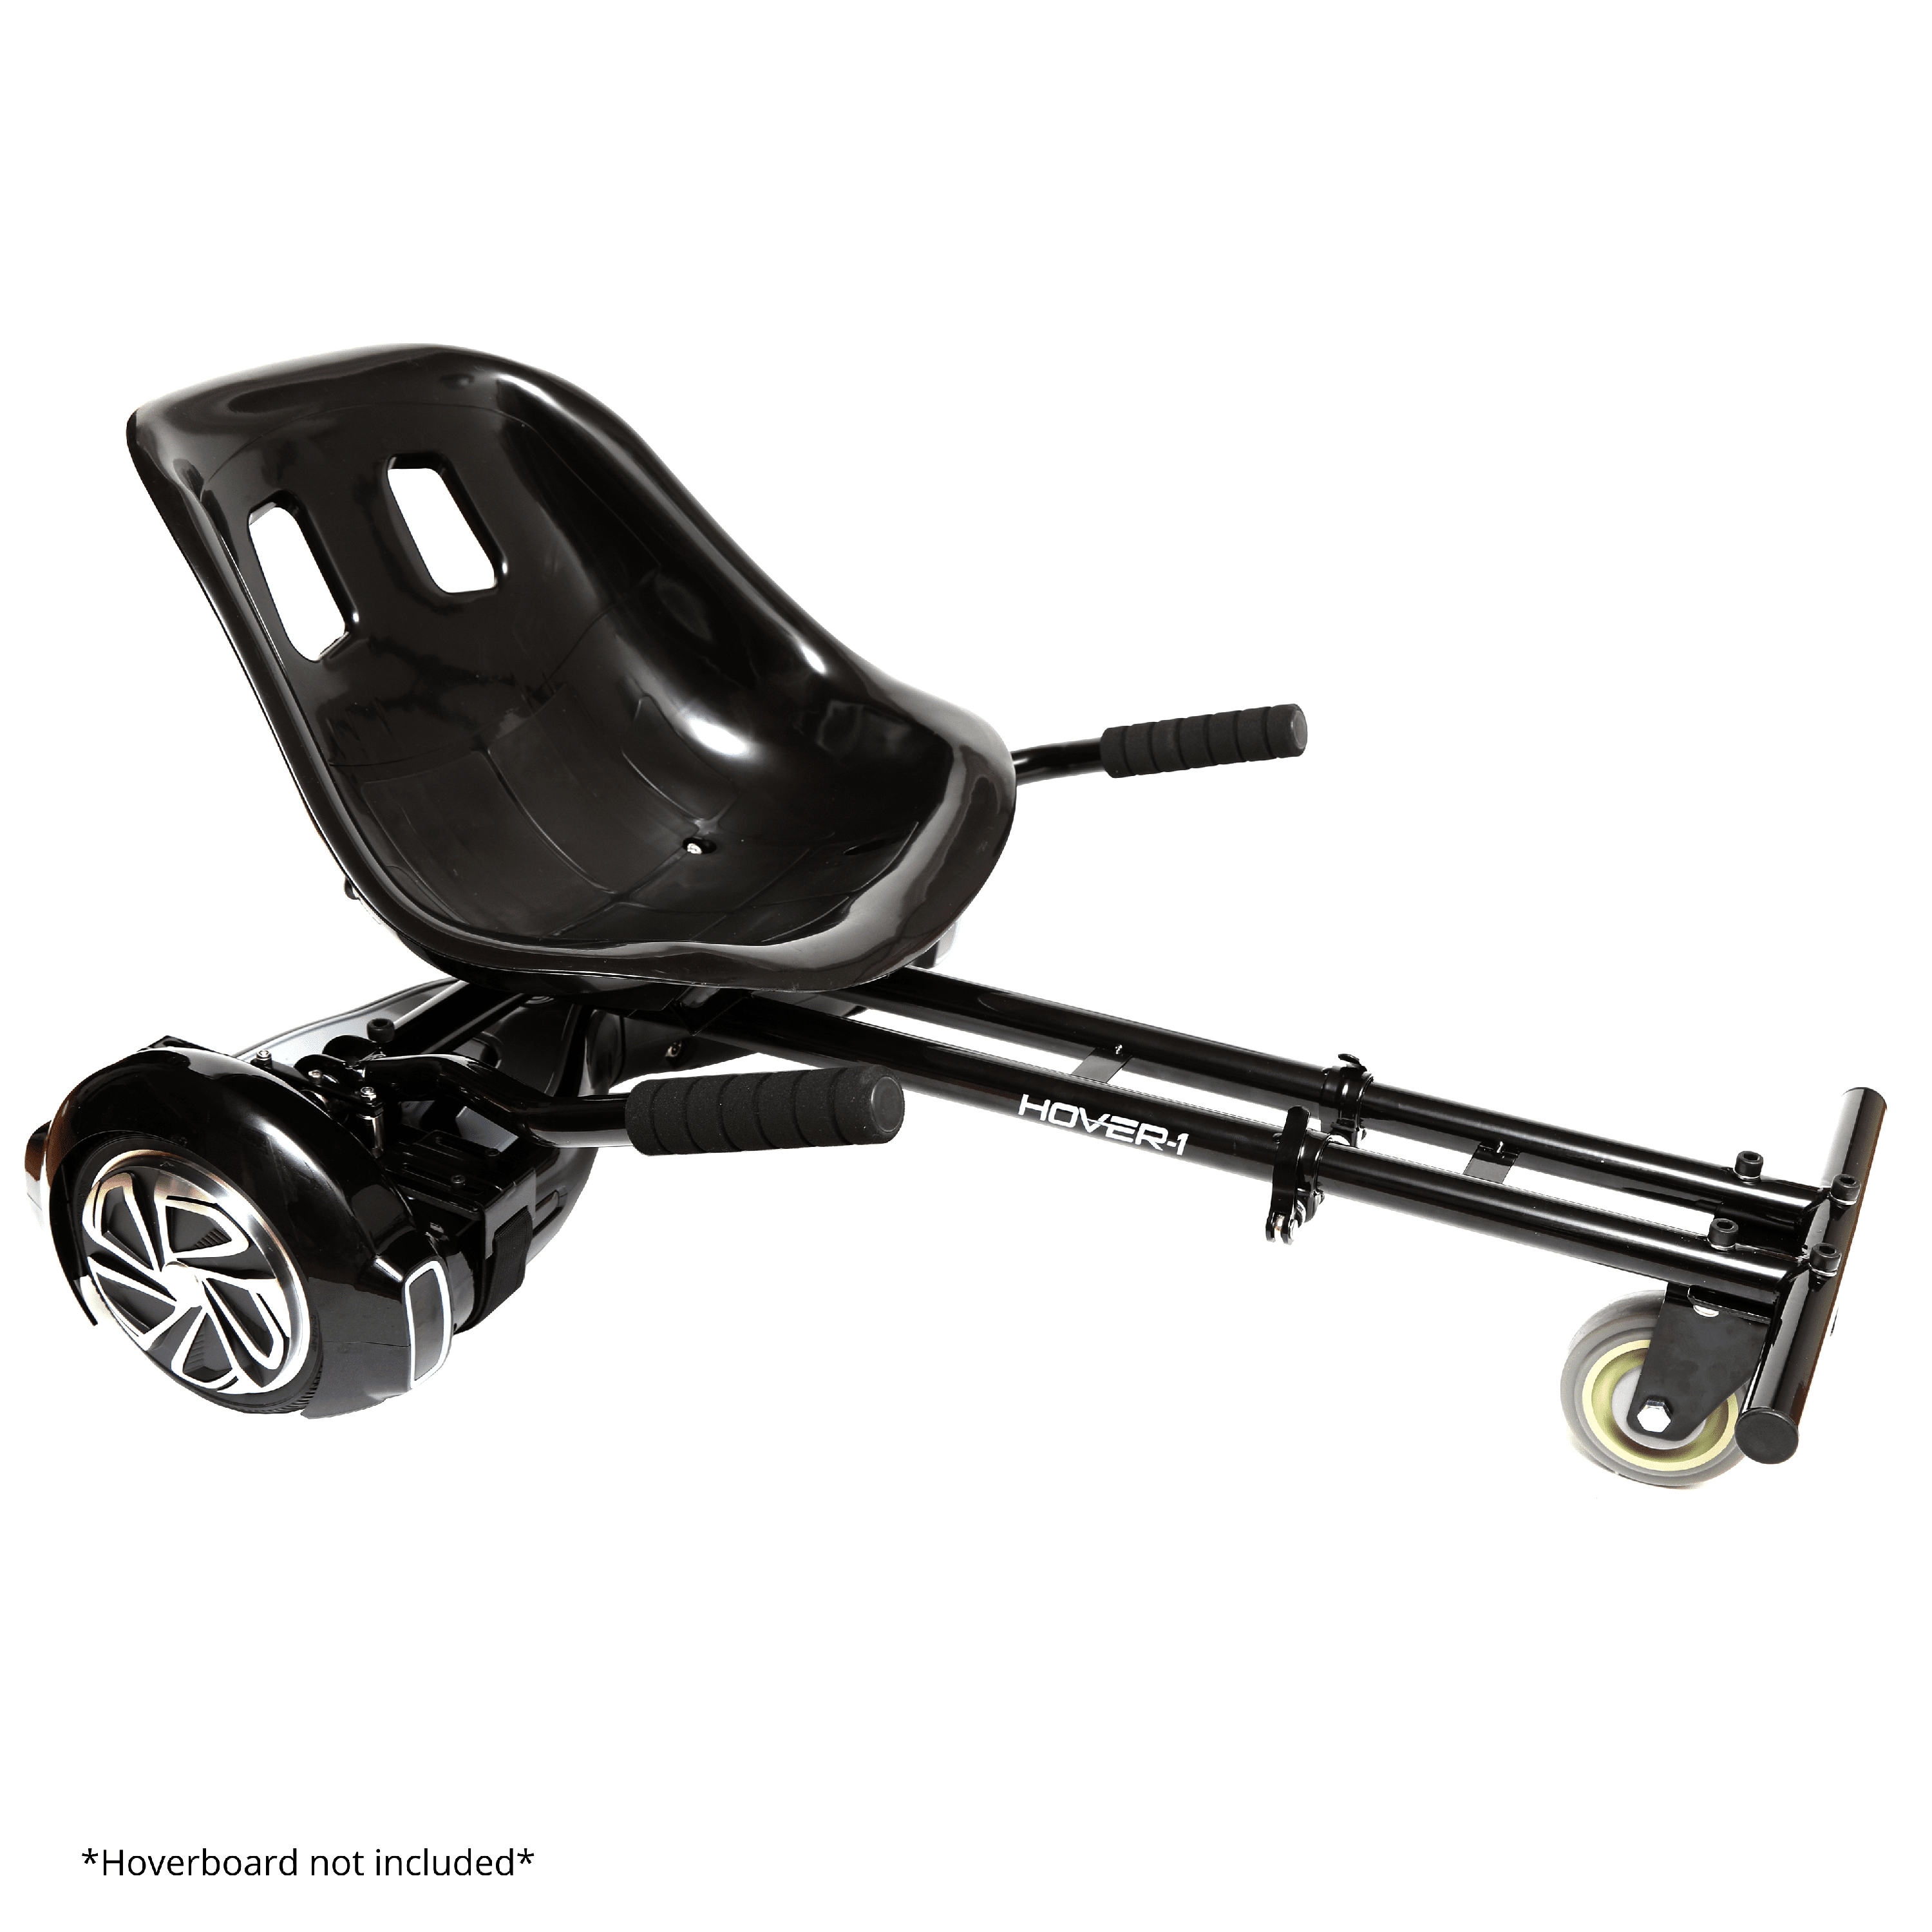 Dekorative fortjener tang Hover-1 Kart Attachment for Electric Hover Board, Transform Your Hover board  into Kart - Black - Walmart.com